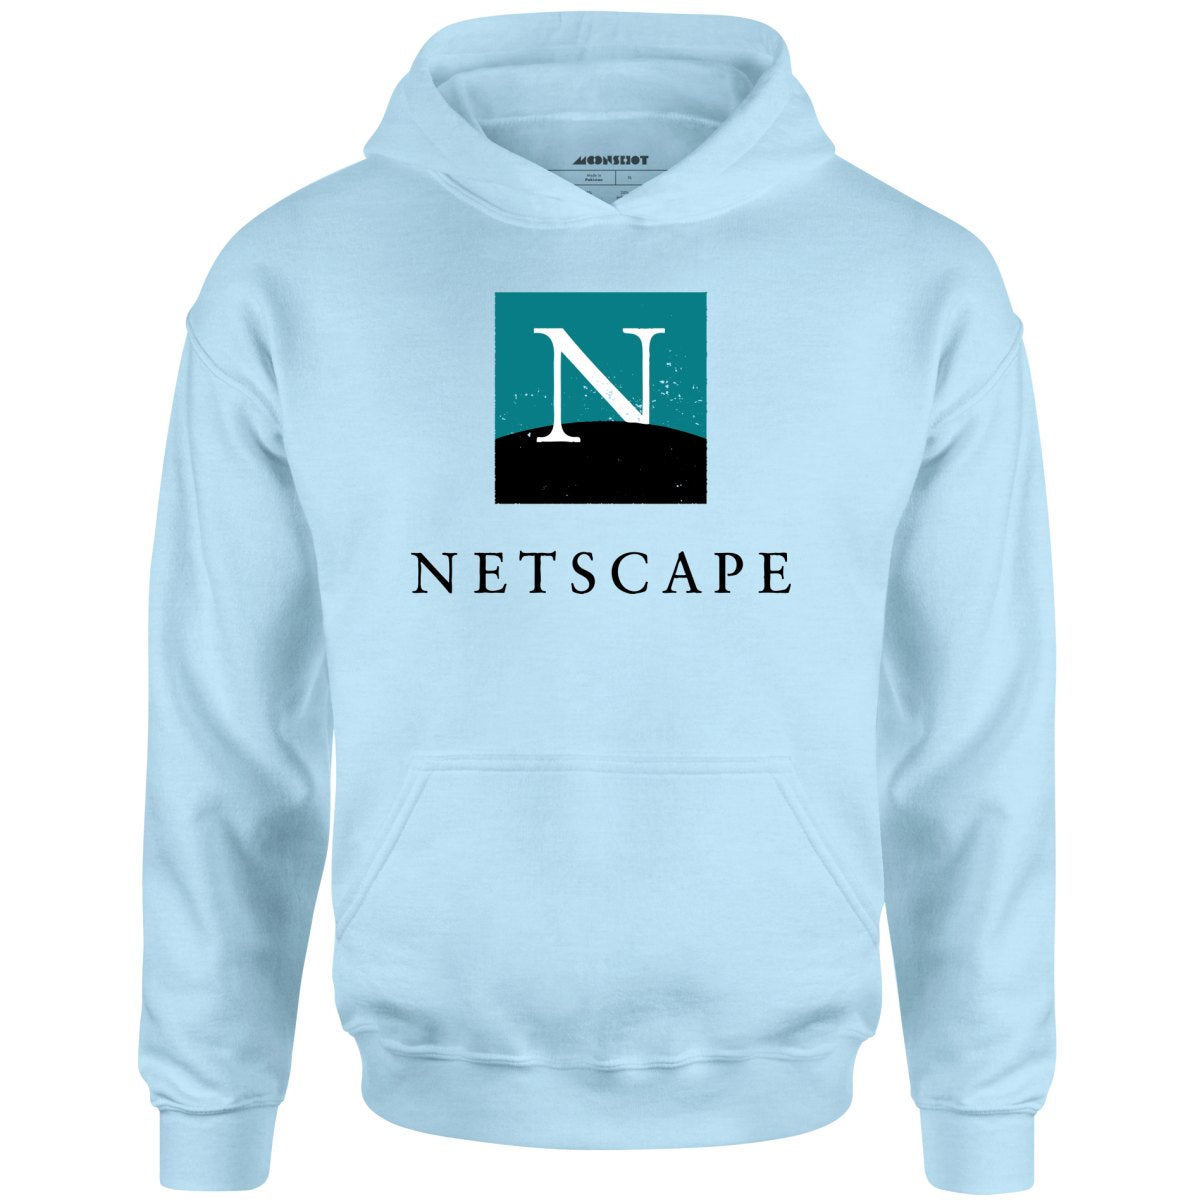 Netscape - Vintage Internet - Unisex Hoodie